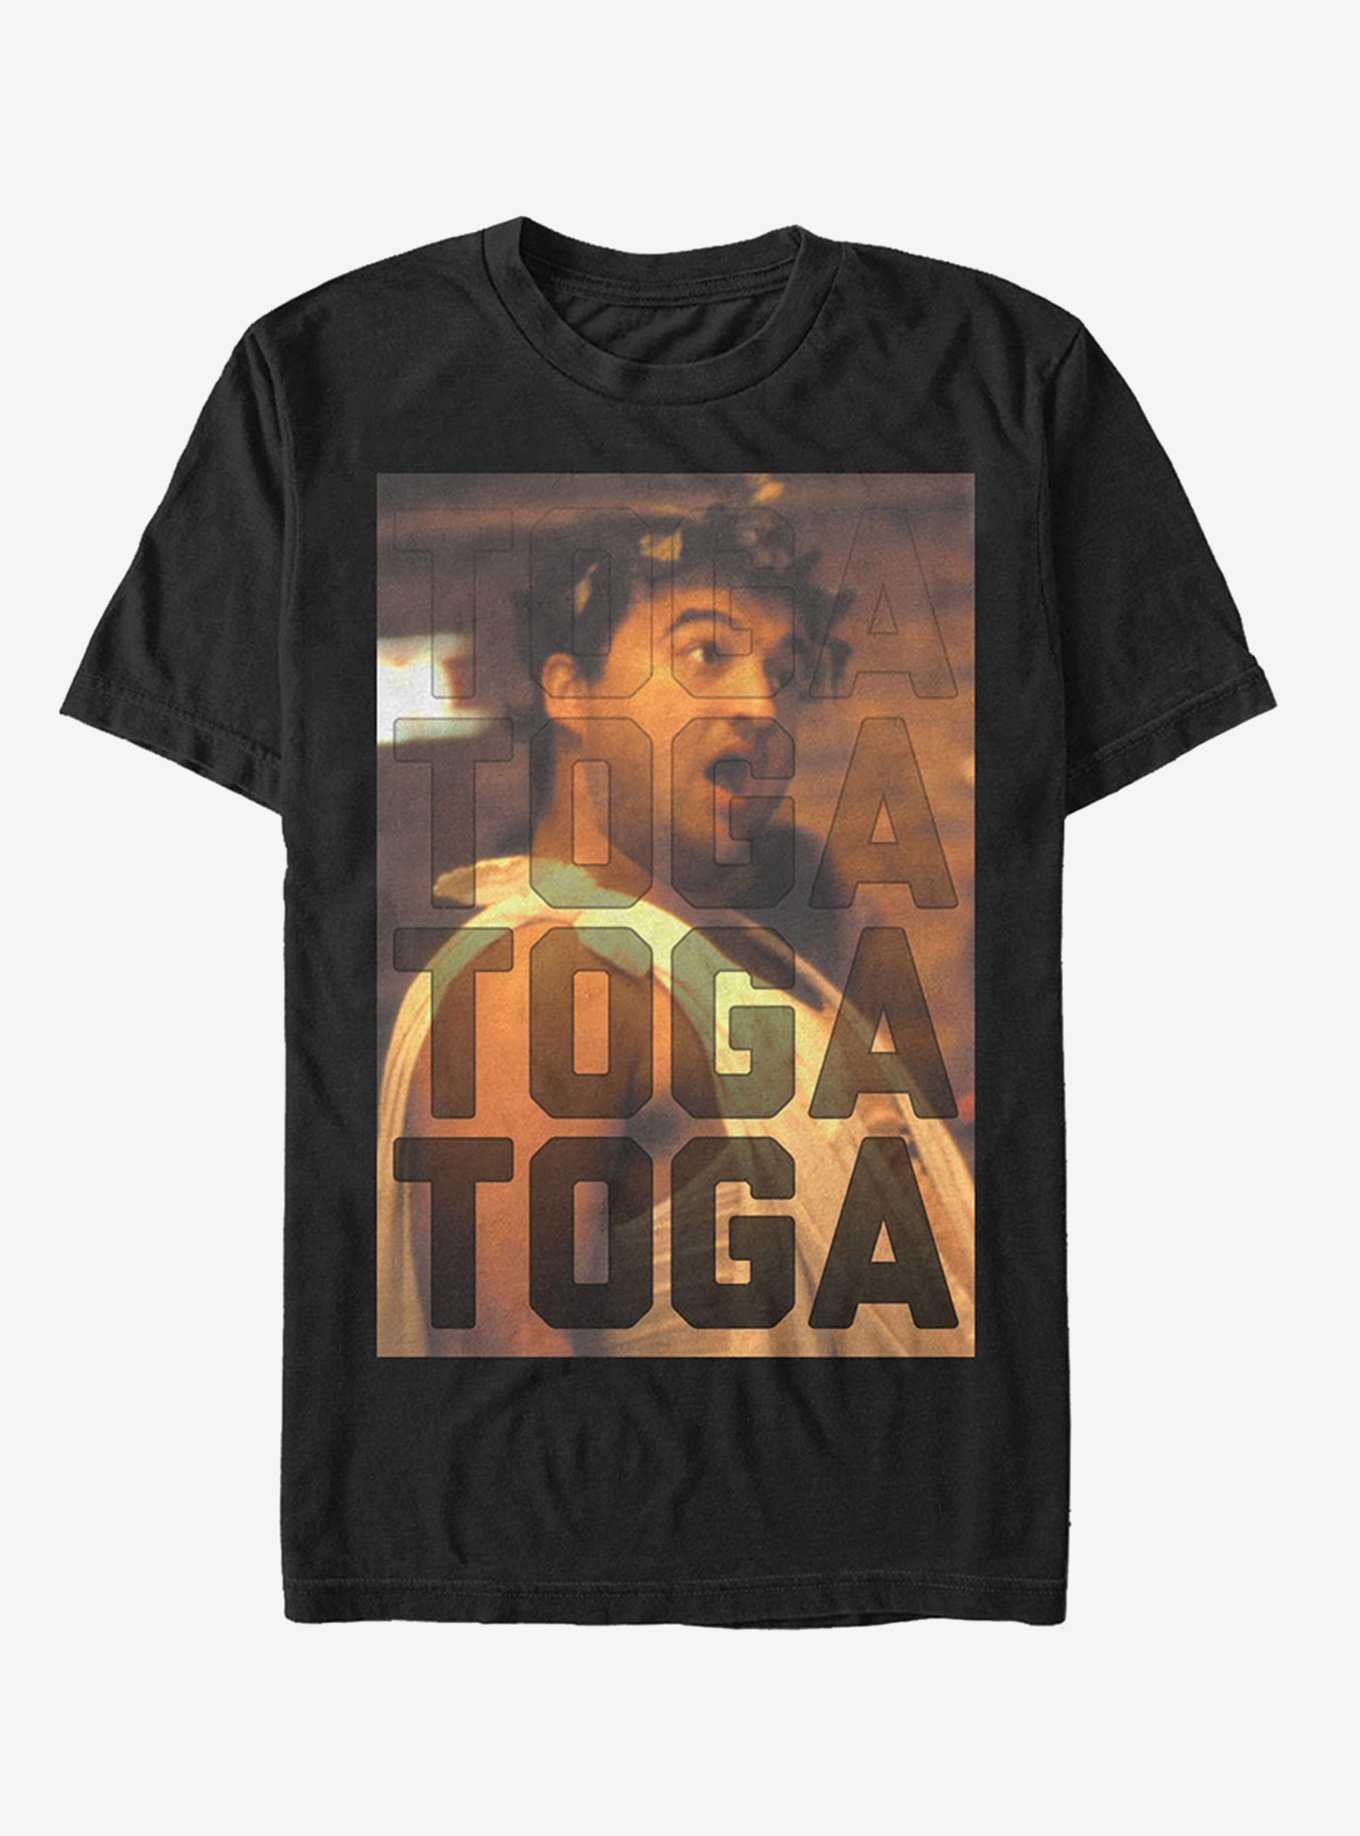 Bluto Toga T-Shirt, , hi-res